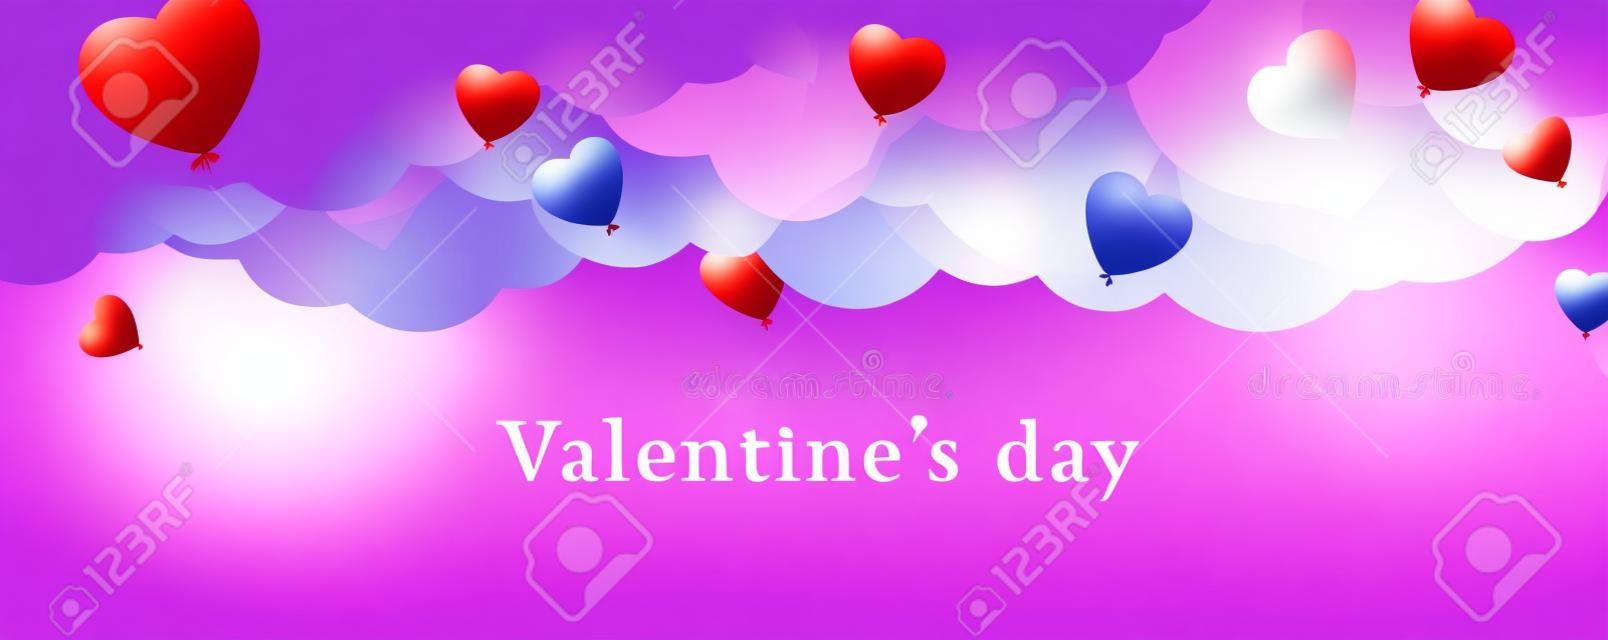 Walentynki-dzień tło z balonów w kształcie serca. Vector illustration.banners.Wallpaper.flyers, zaproszenie, plakaty, broszury, kupon rabatowy.